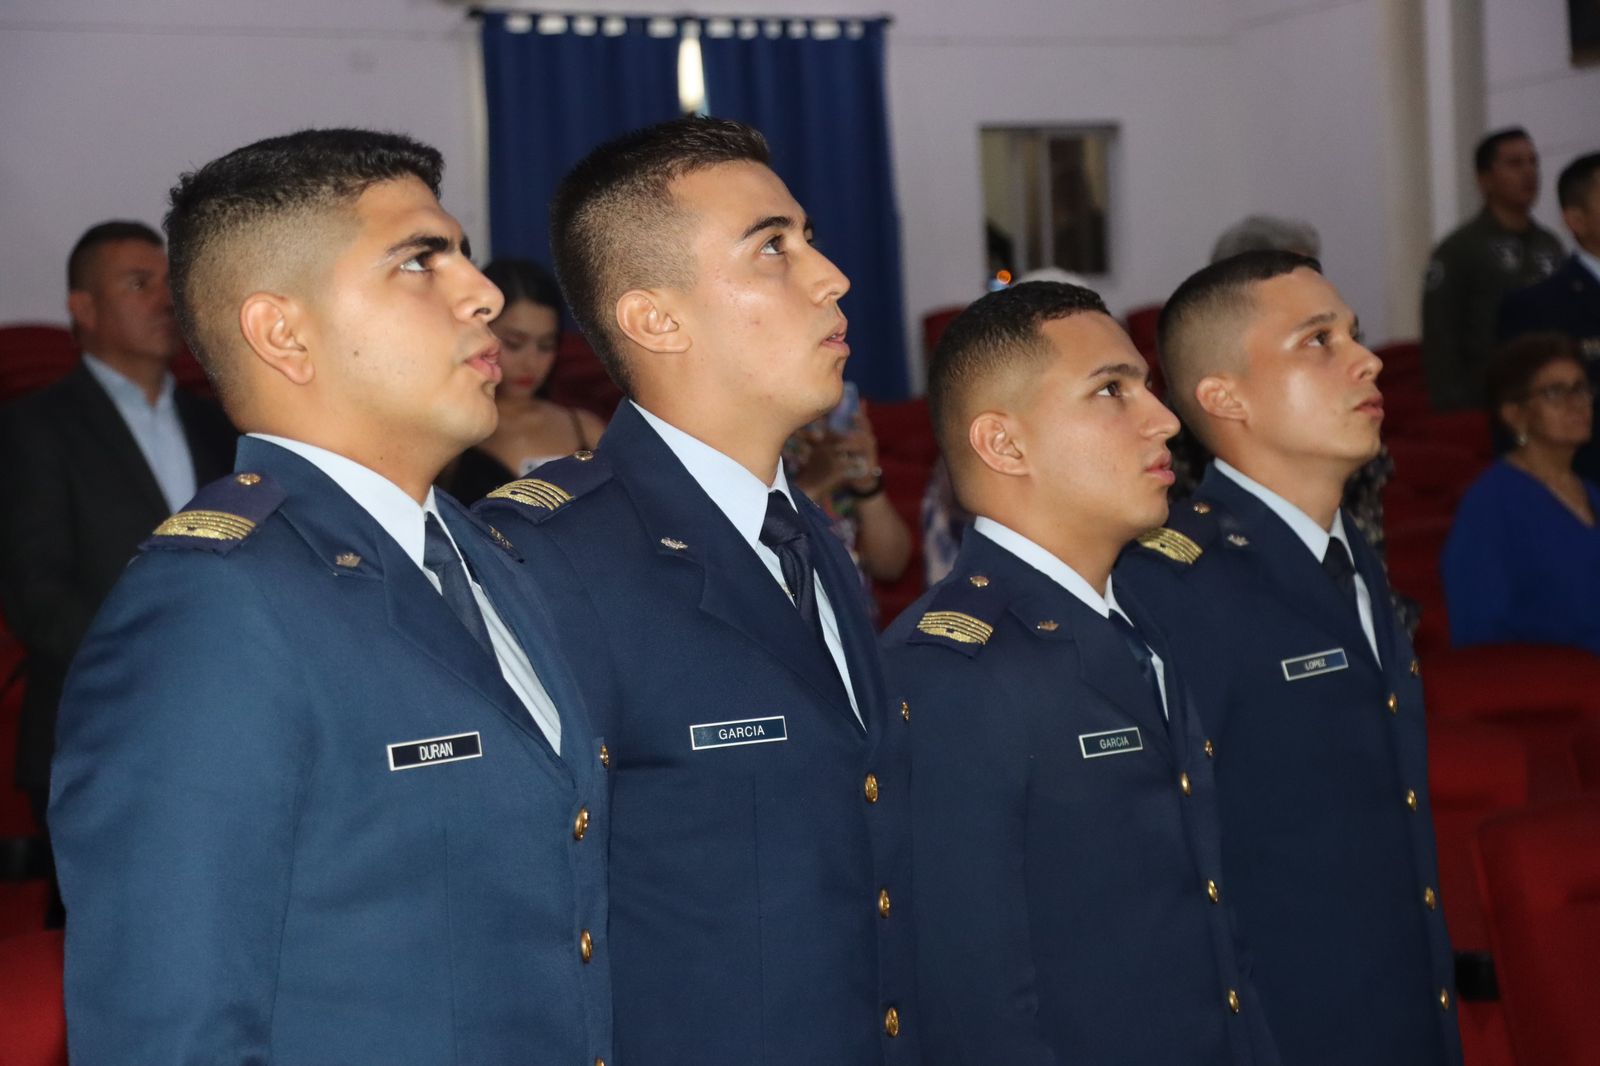 Cuatro Alféreces lograron el sueño de graduarse como Pilotos Militares